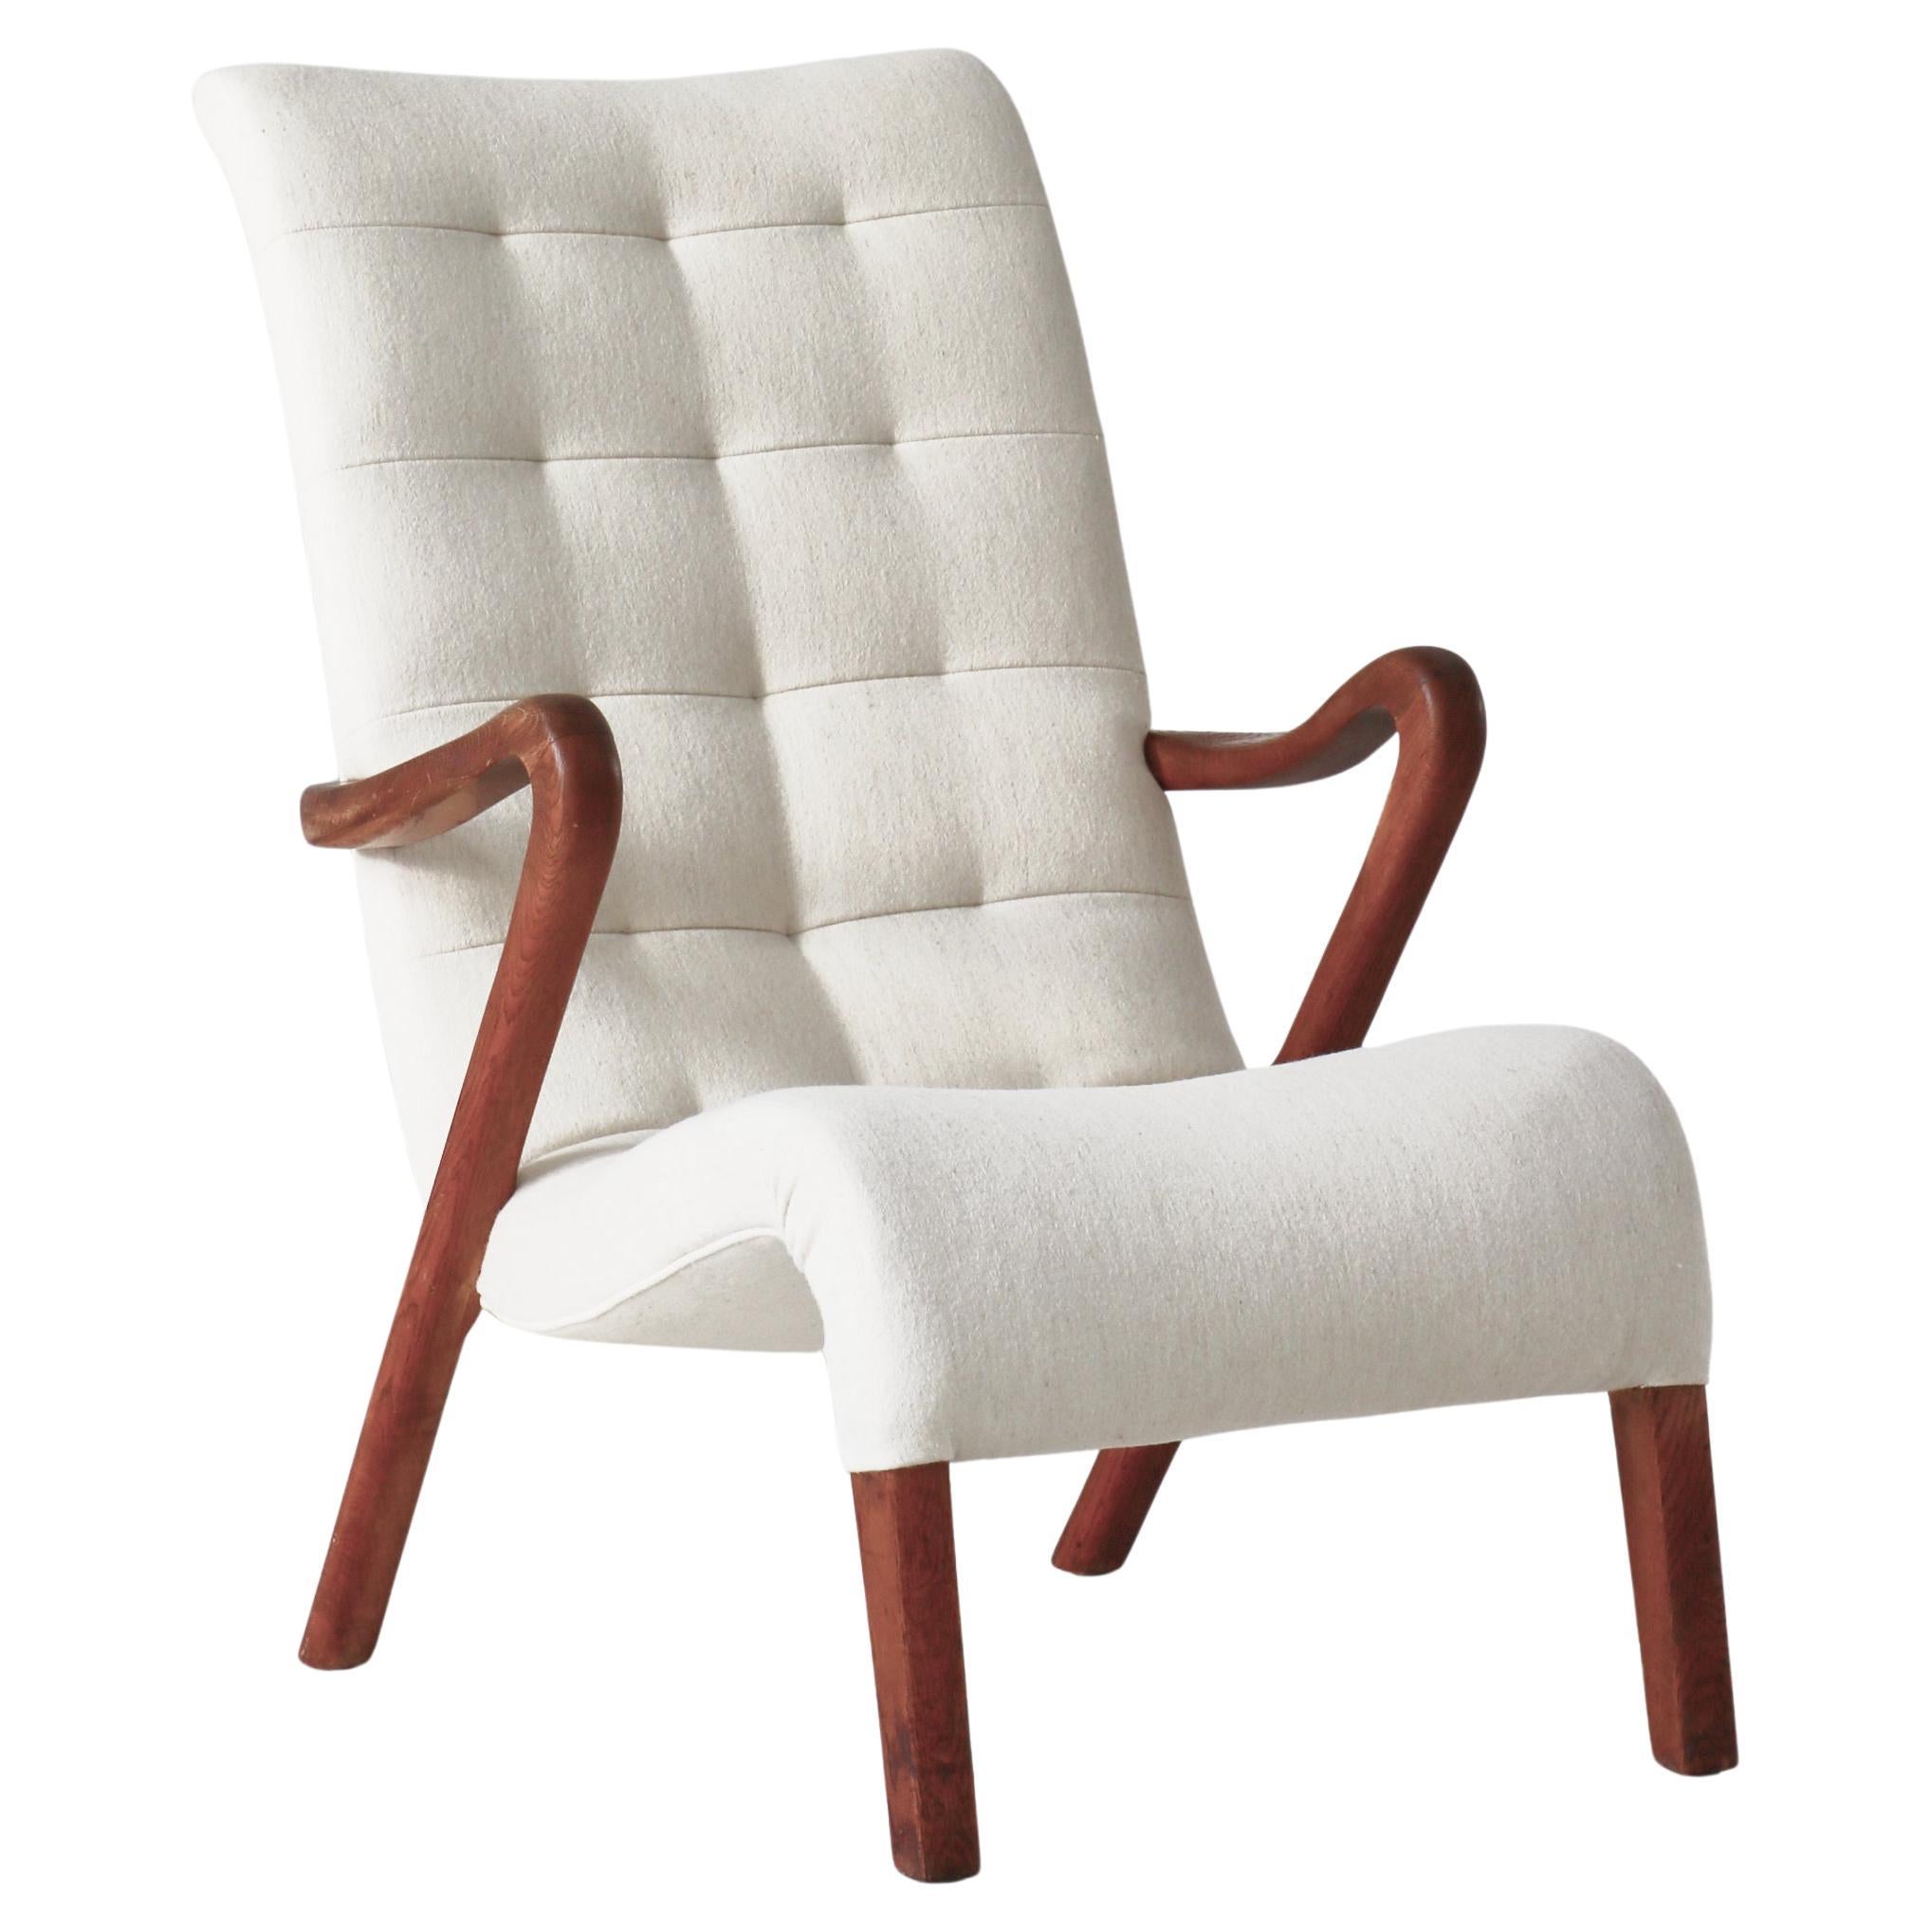 Danish Modern Lounge Chair "Model No.56" by Slagelse Møbelværk, 1940s For Sale